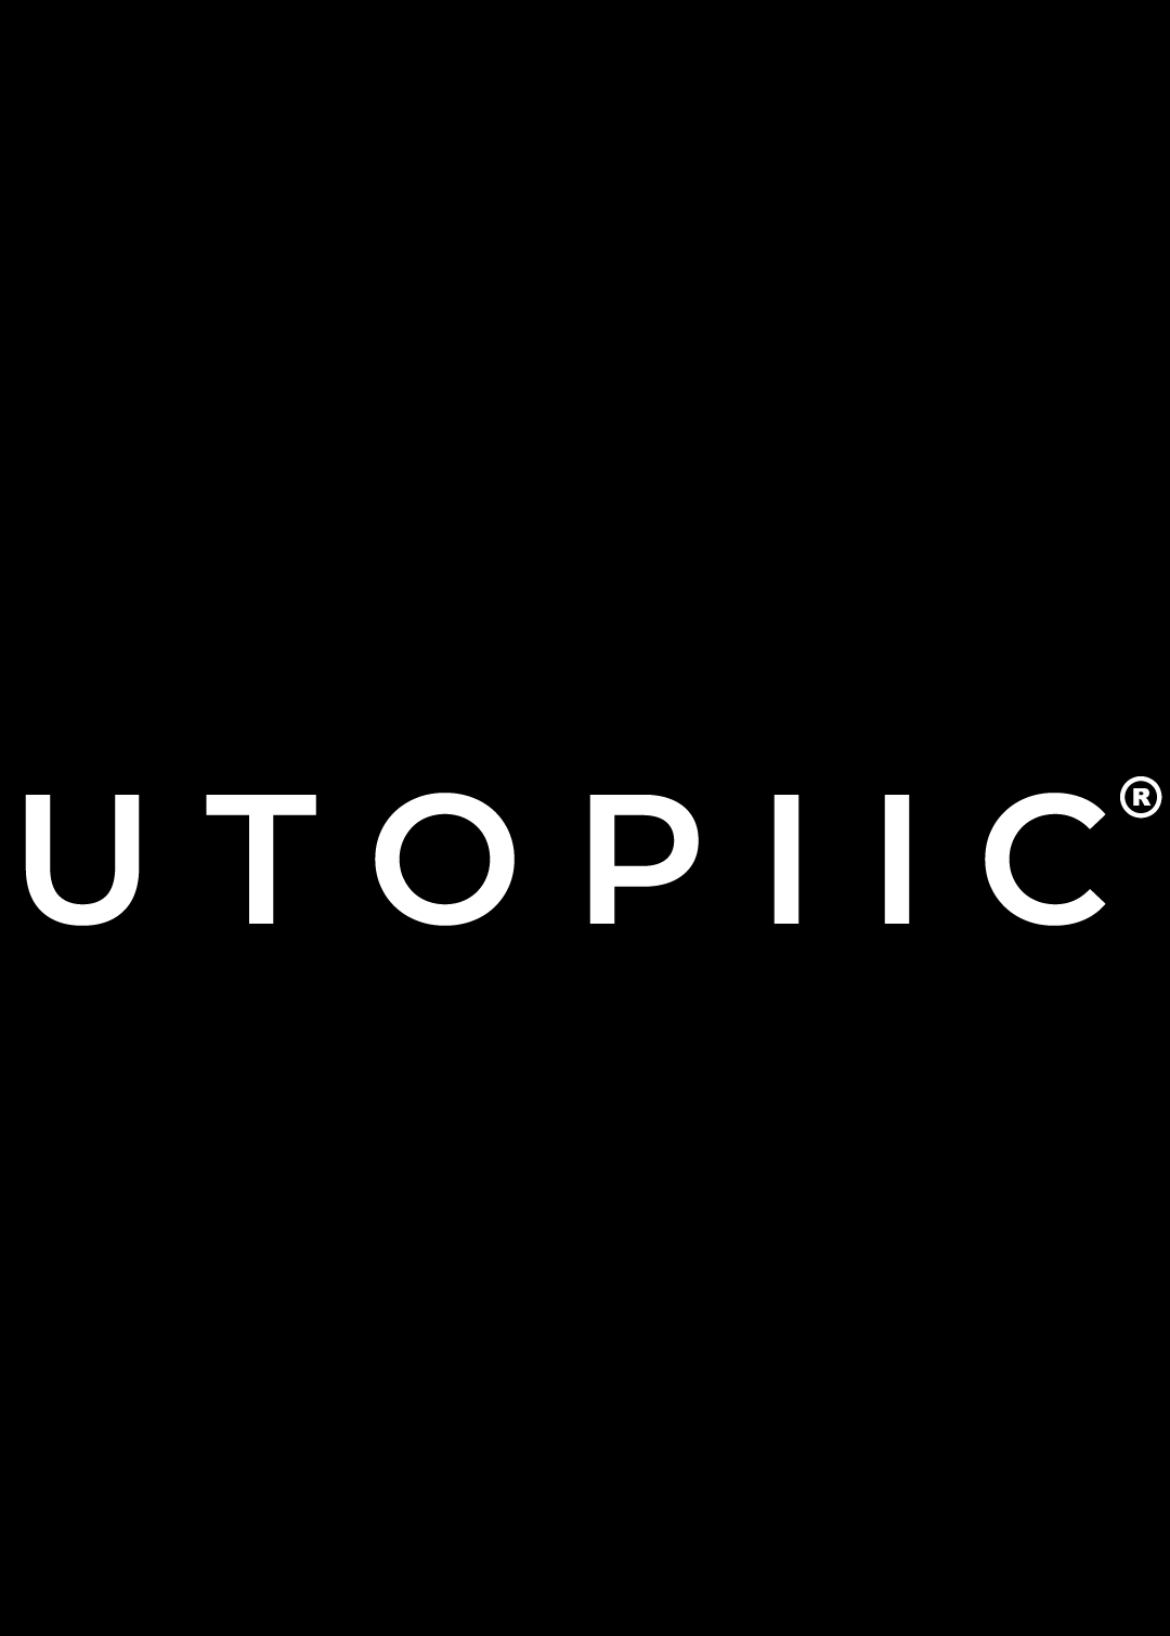 Utopiic Innovations Pvt Ltd